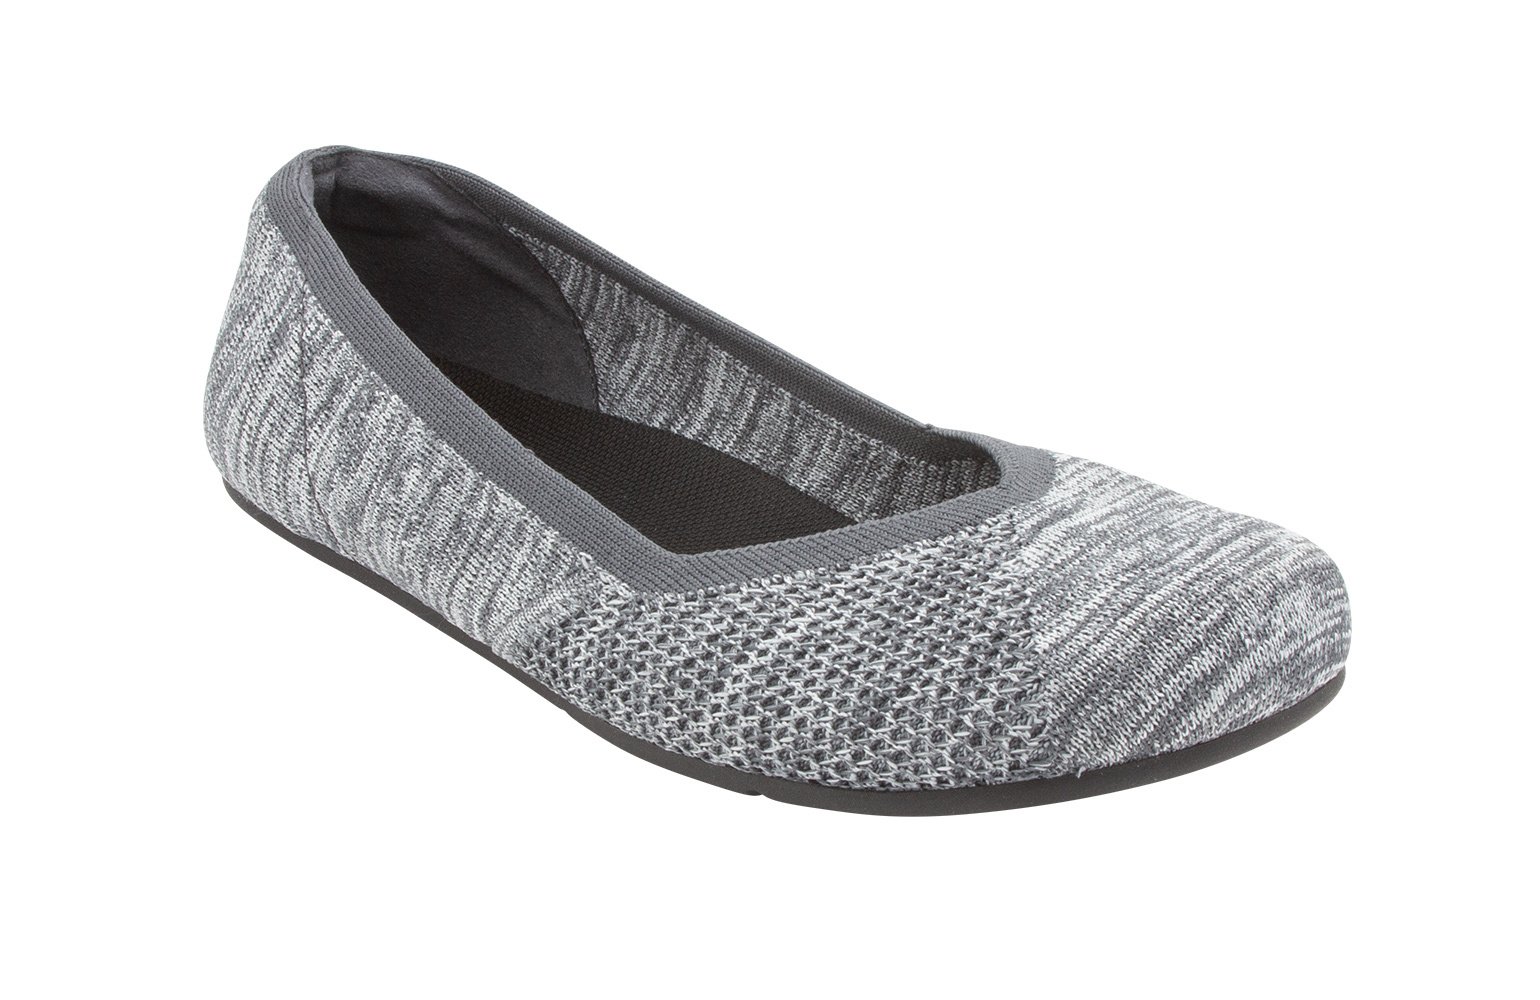 Xero Shoes, Phoenix Knit - PHX-KGRY - gray, dames, maat 41 eu